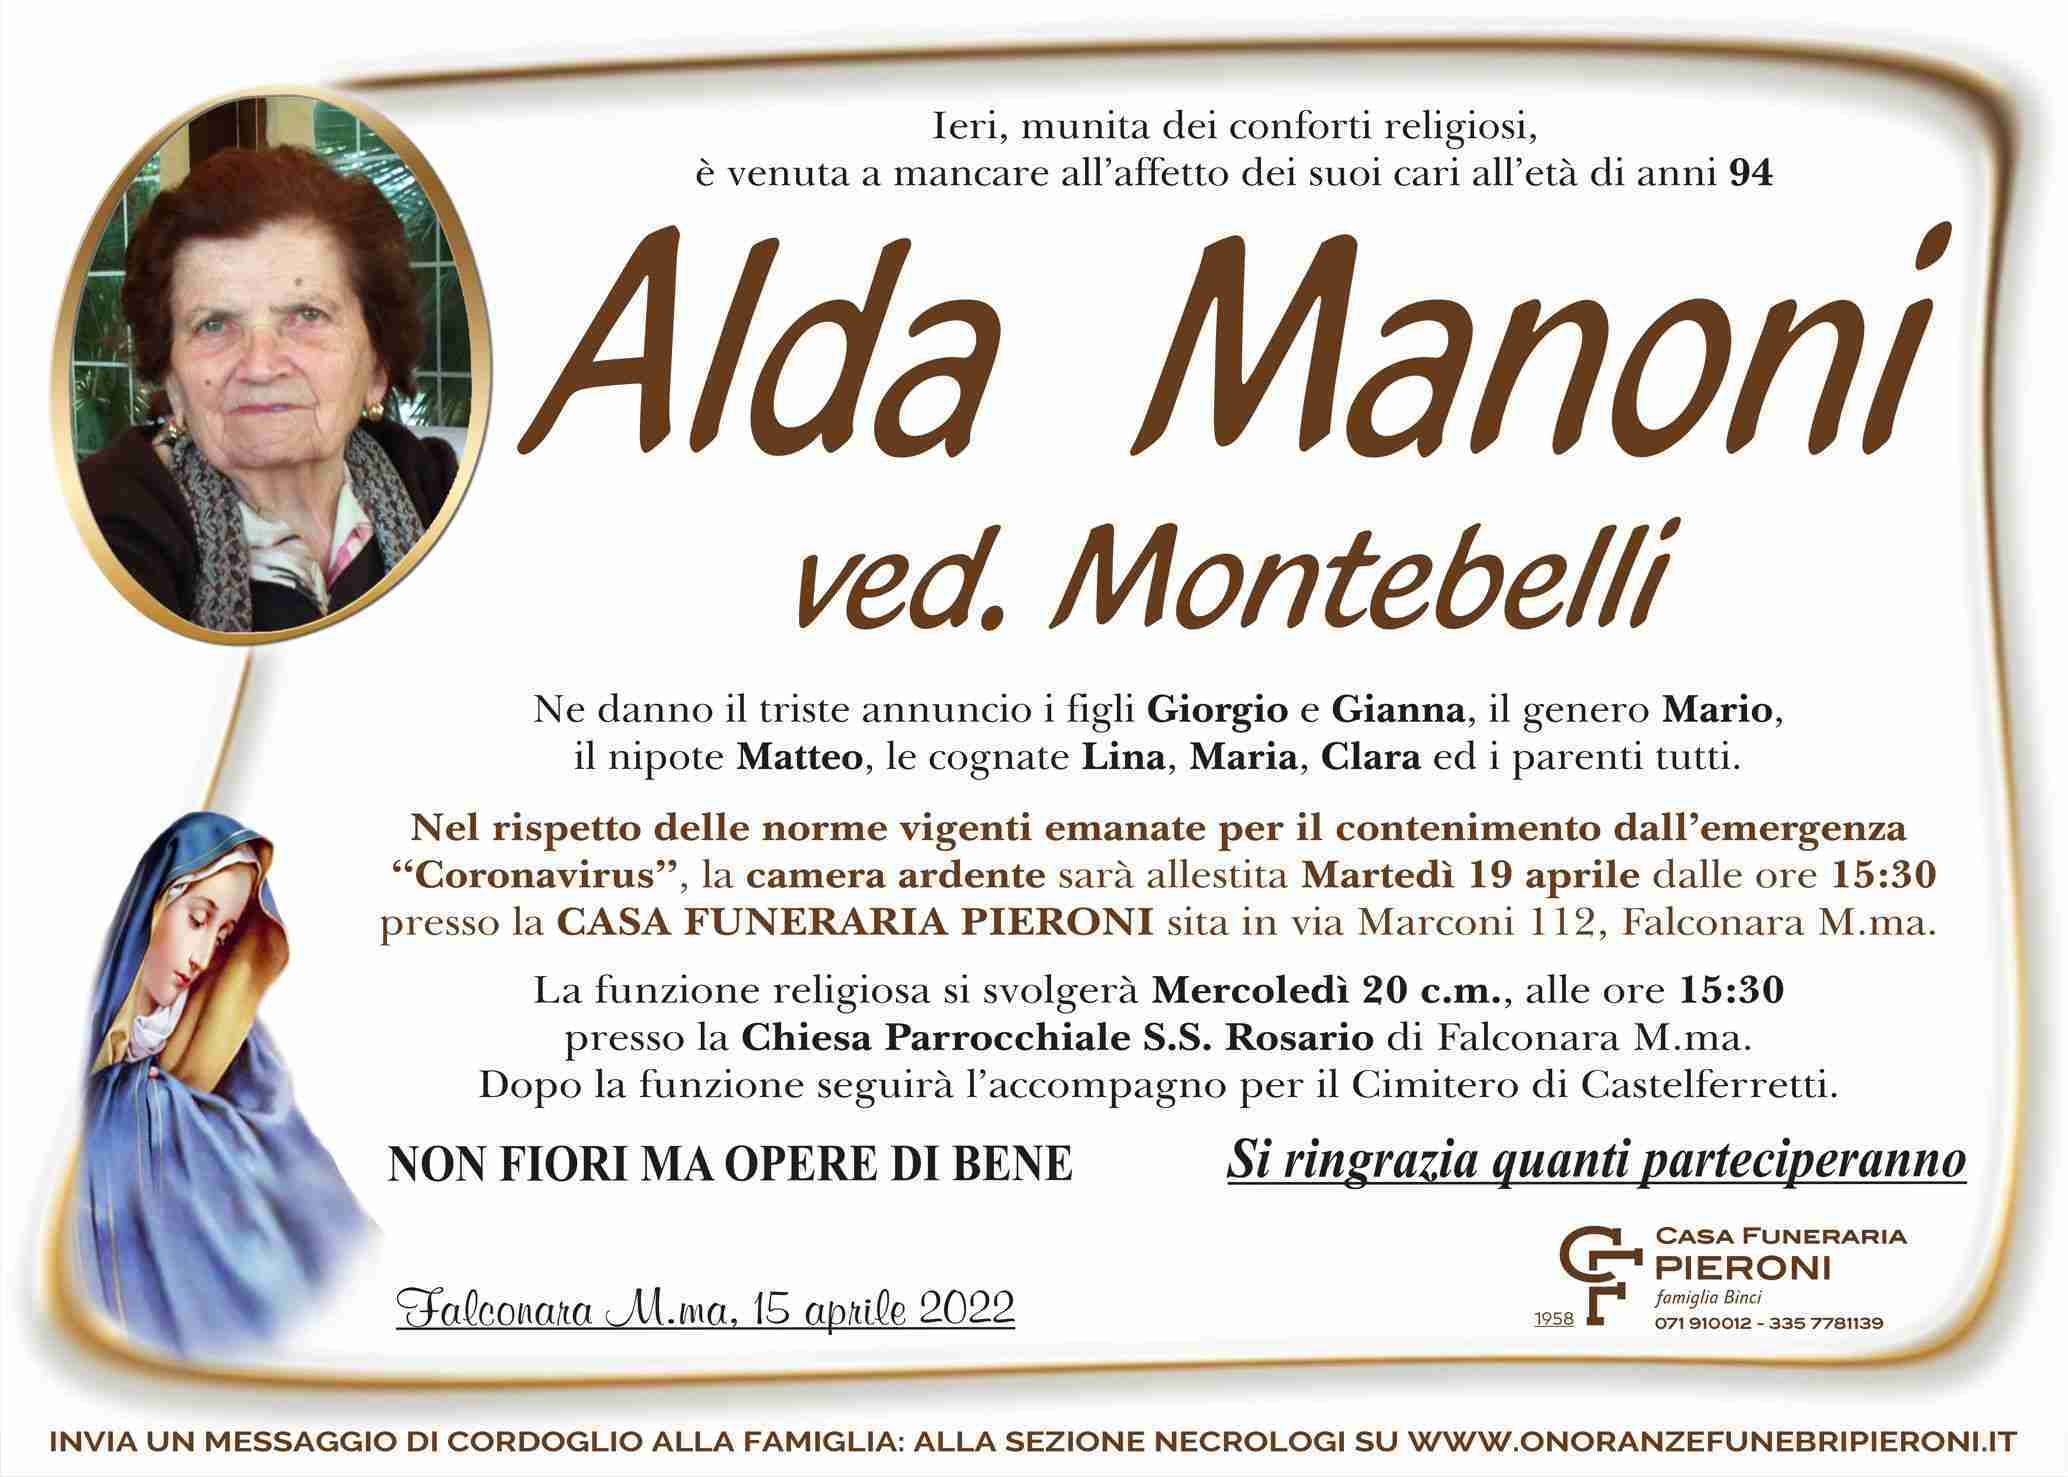 Alda Manoni